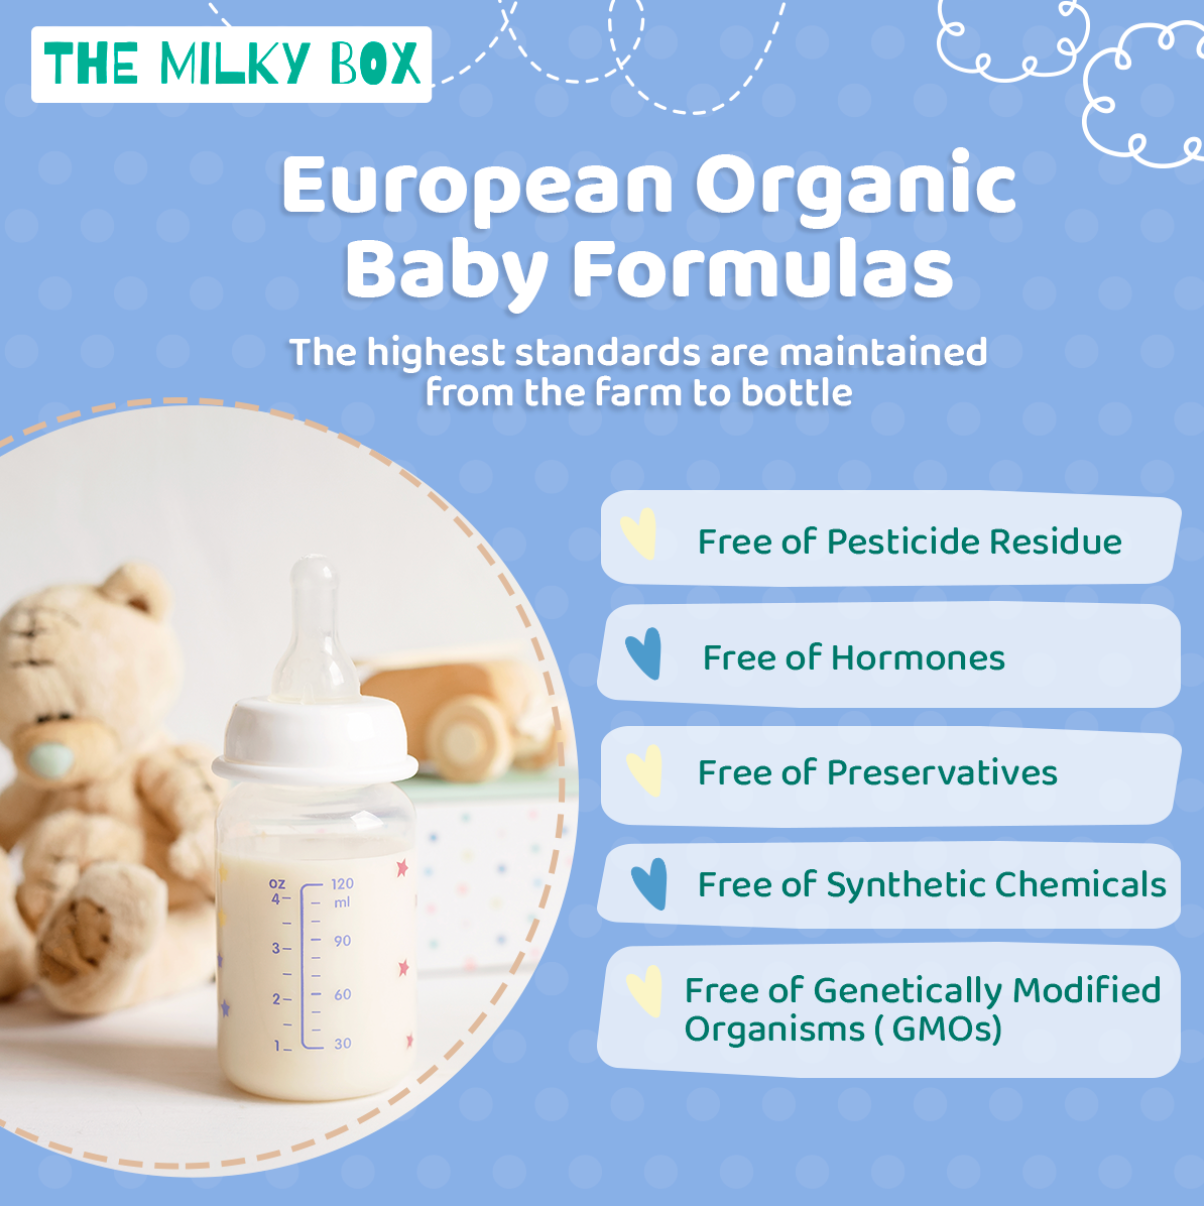 European Organic Baby Formulas